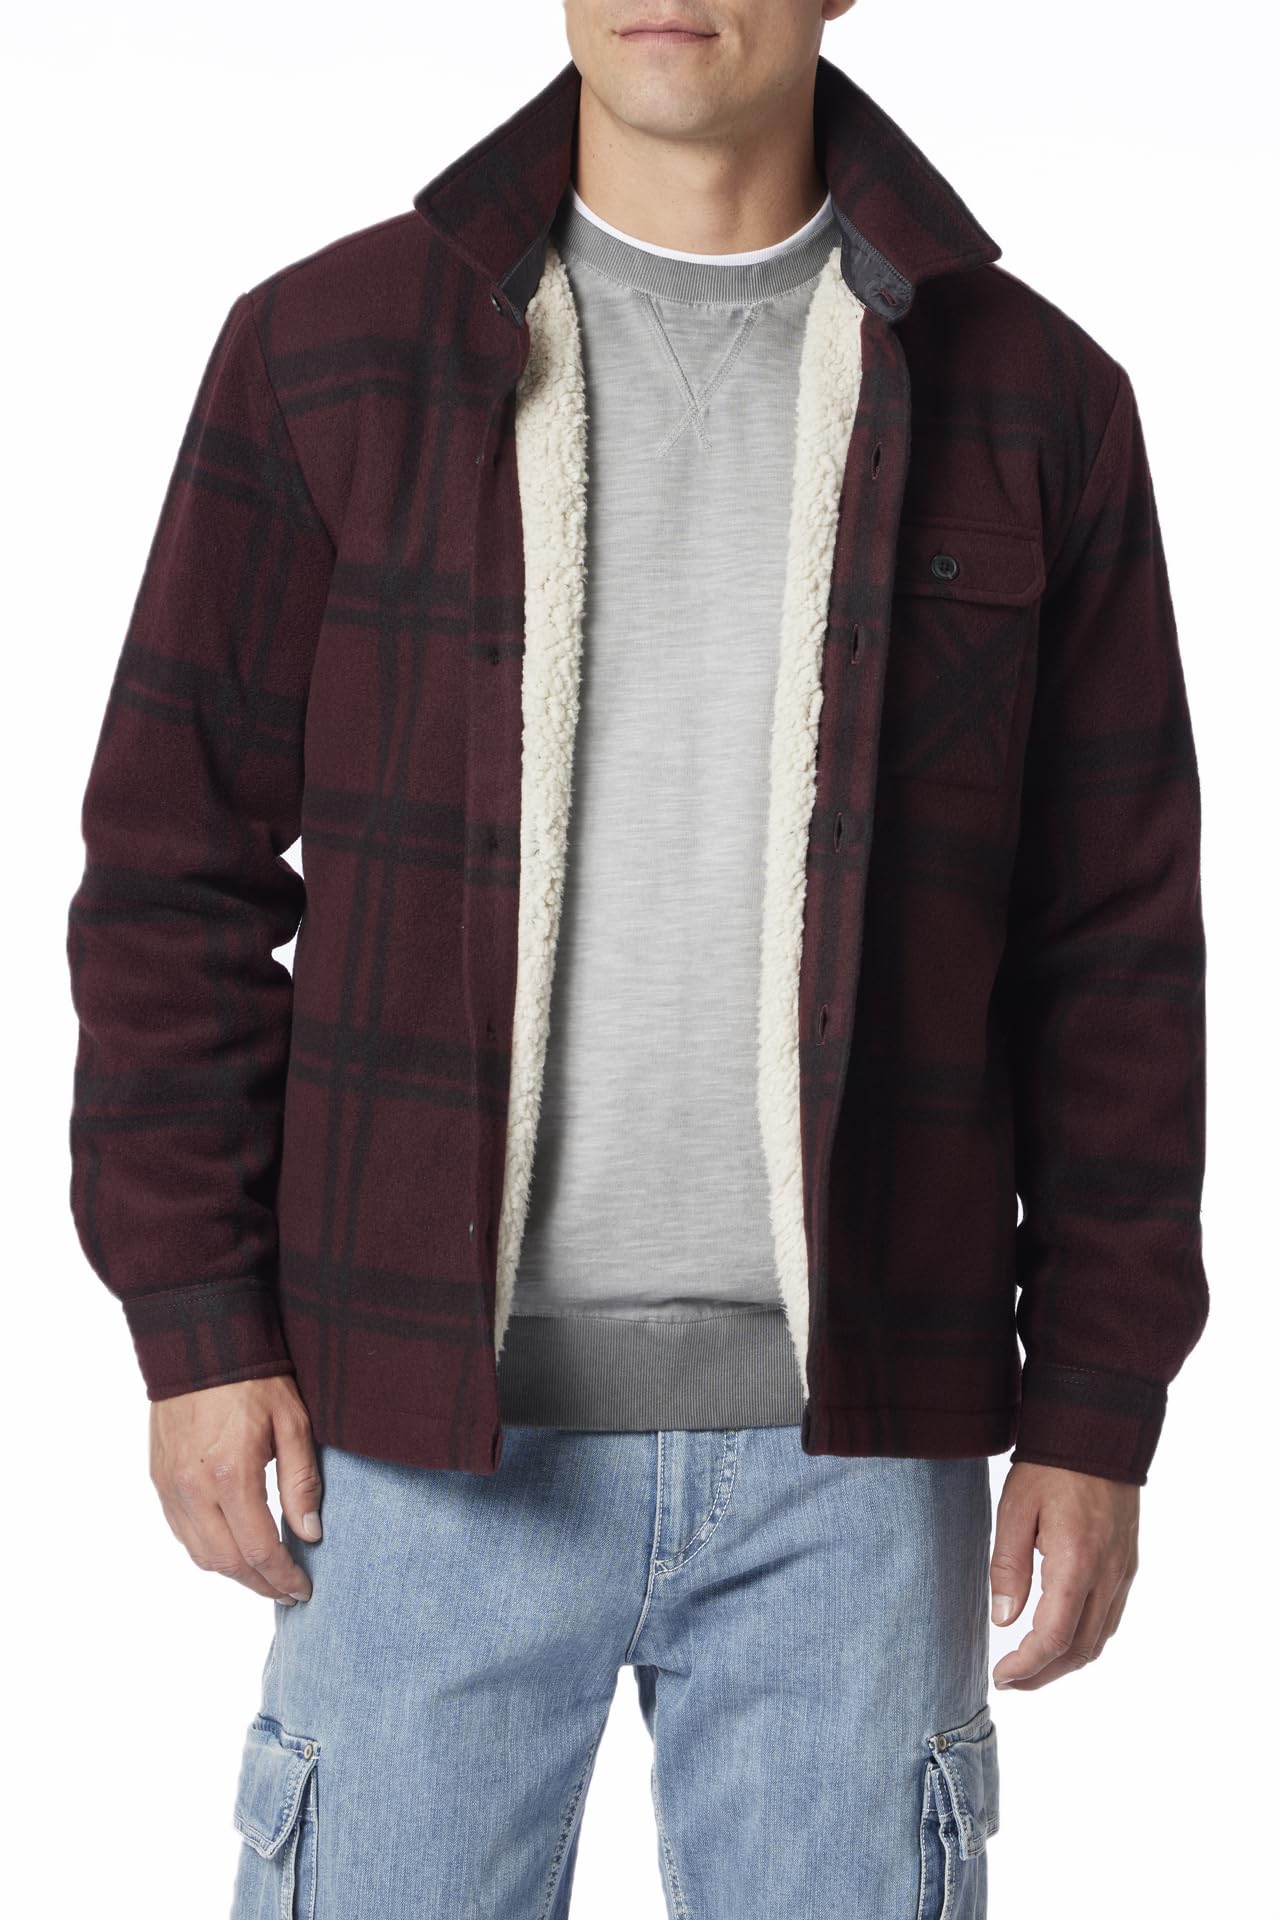 UNIONBAY Men's Woodsman Microfleece Lined Flannel Shirt Jacket